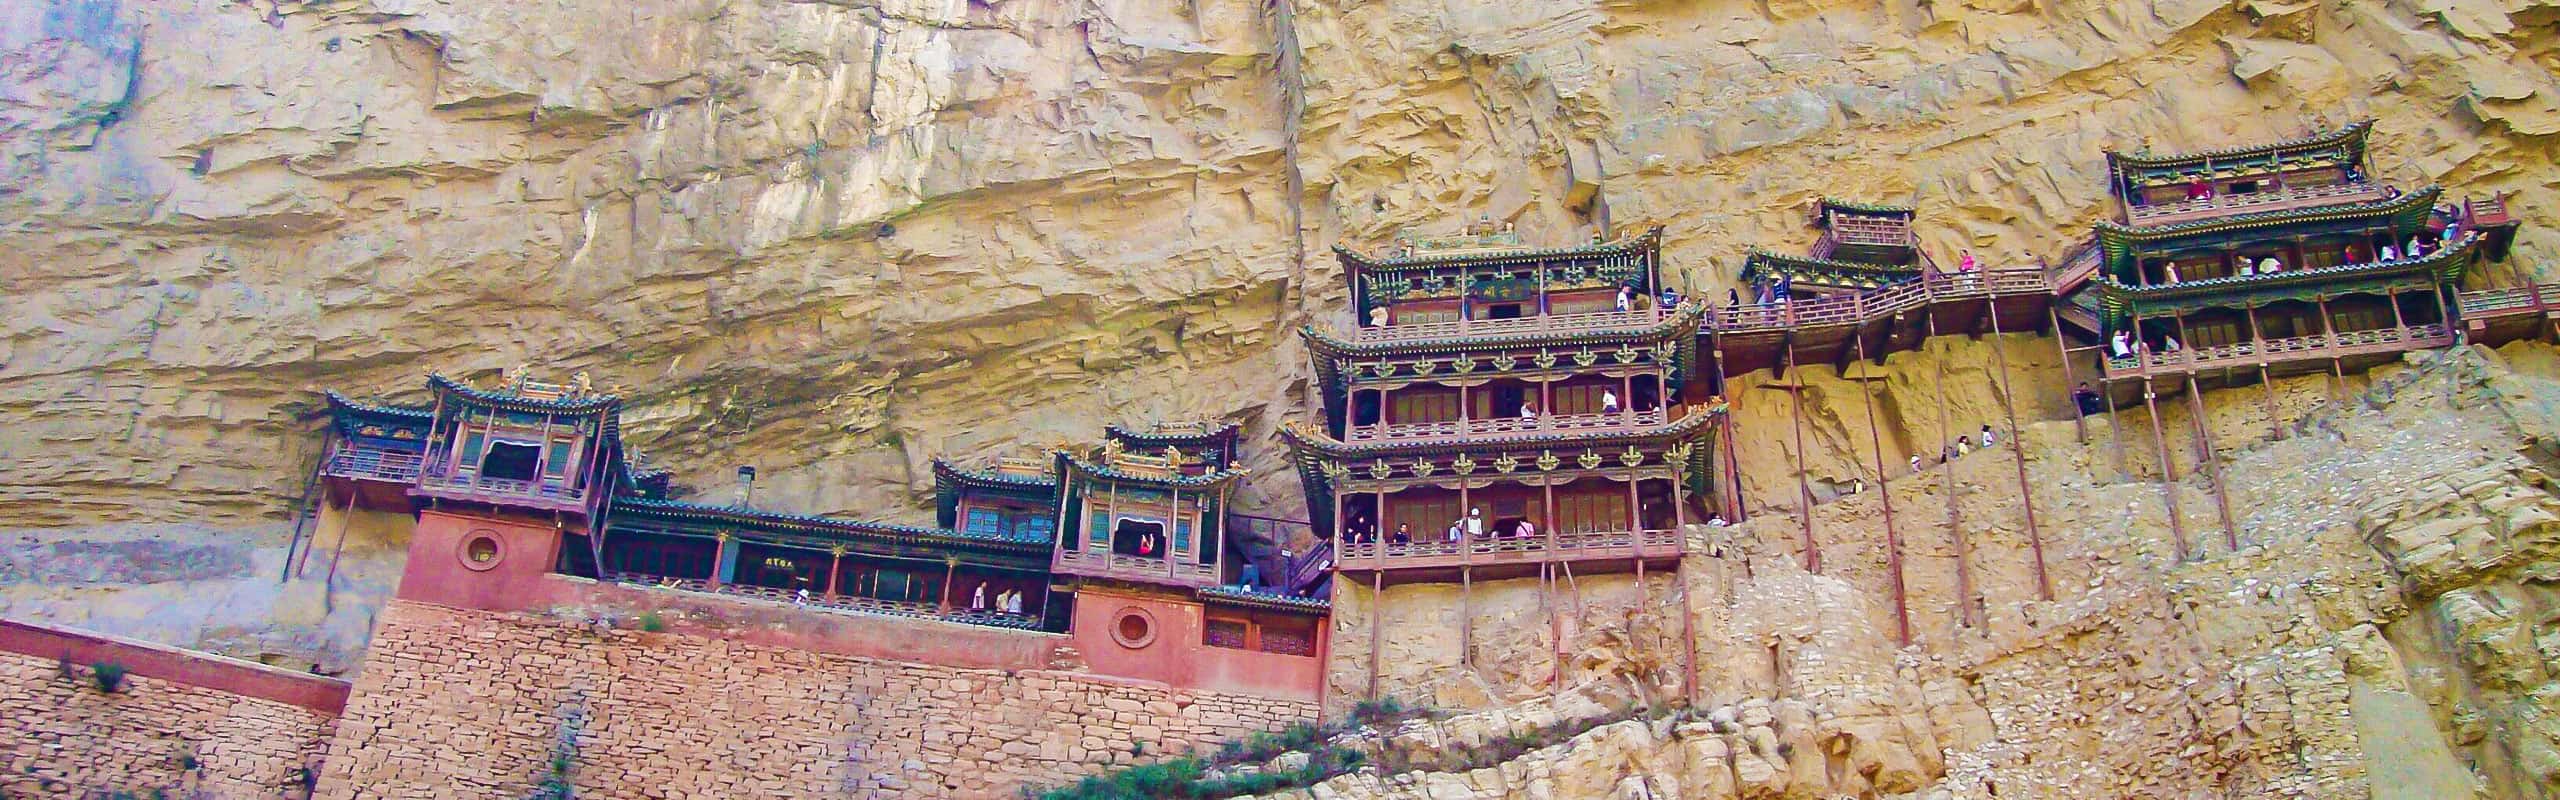 Hanging monastery, Datong